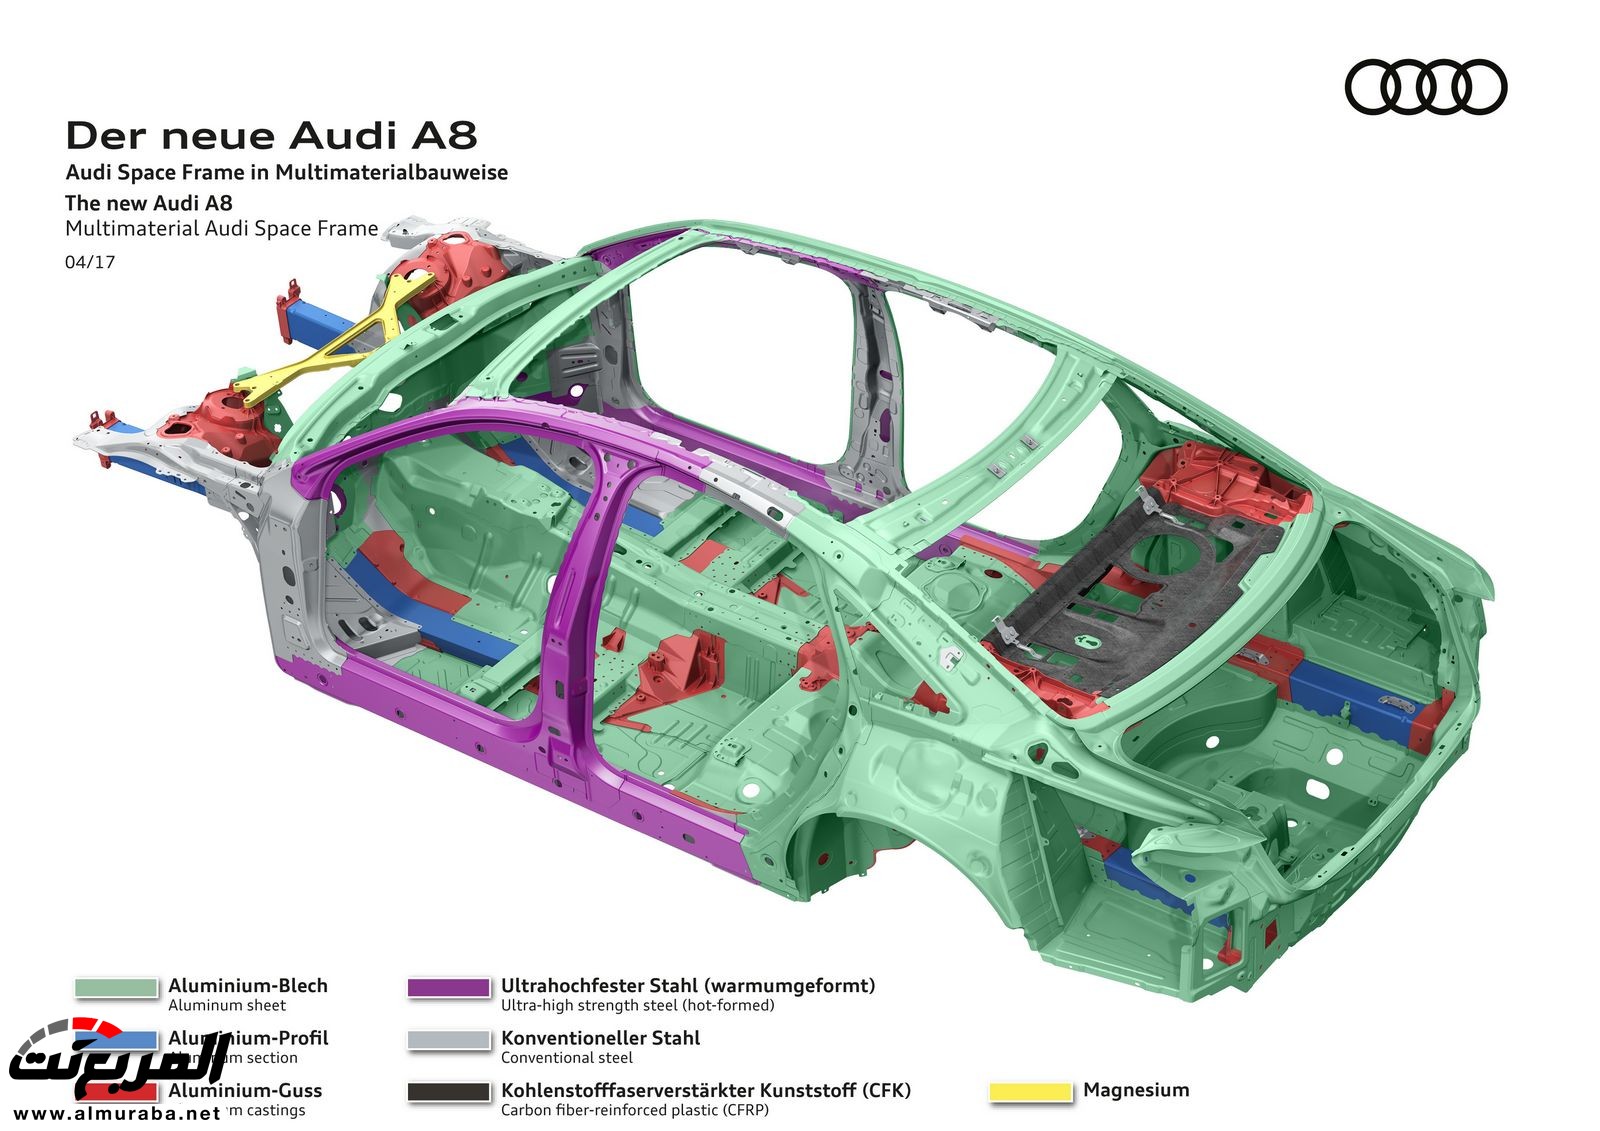 أودي A8 2018 الجديدة كلياً تكشف نفسها بتصميم وتقنيات متطورة "معلومات + 100 صورة" Audi A8 47